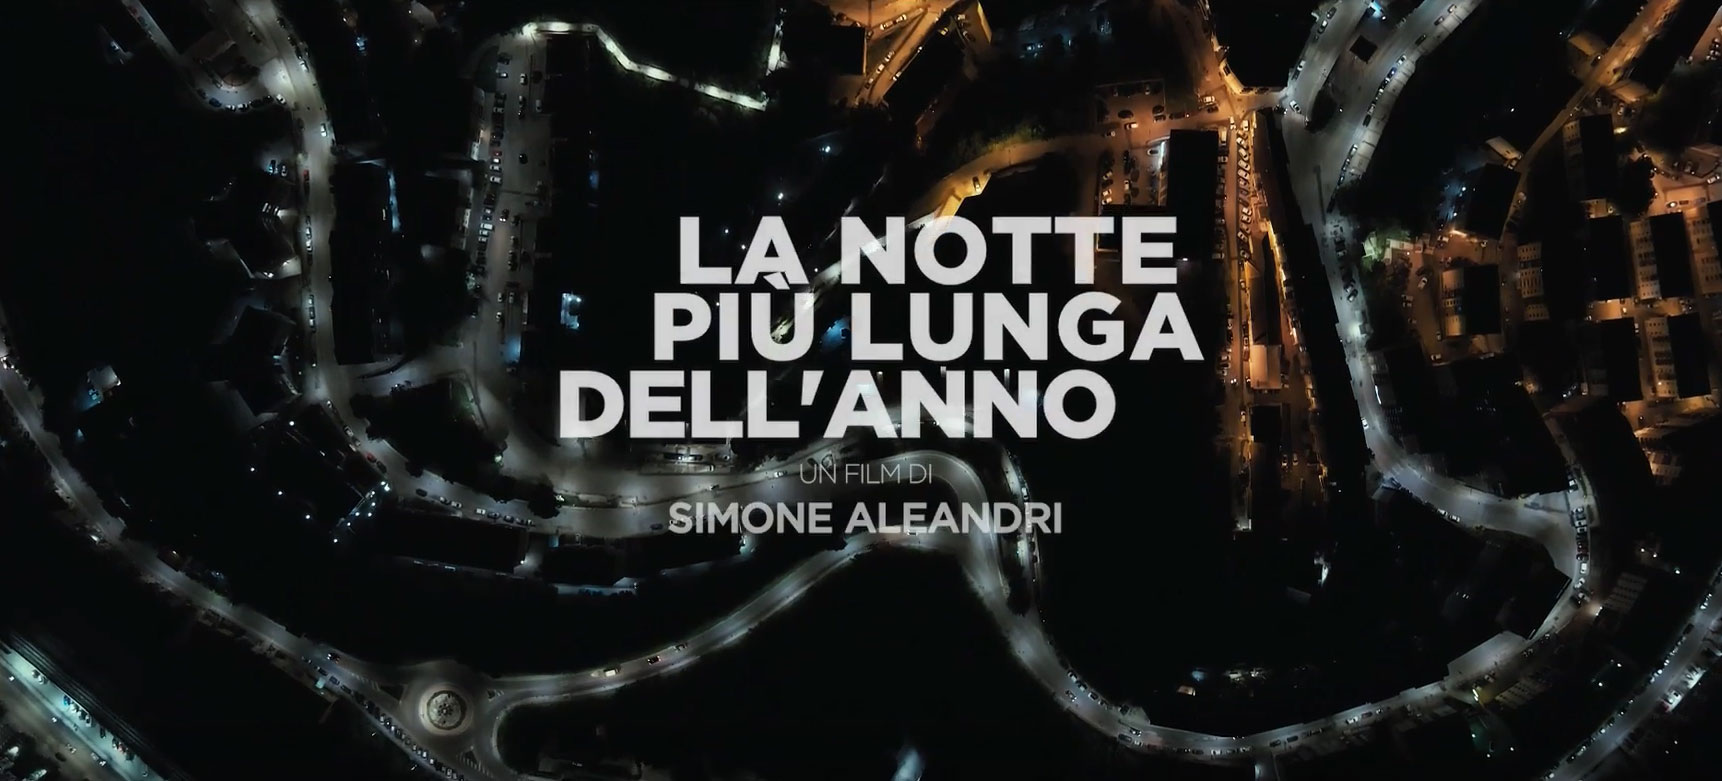 Trailer La notte più lunga dell'anno di Simone Aleandri